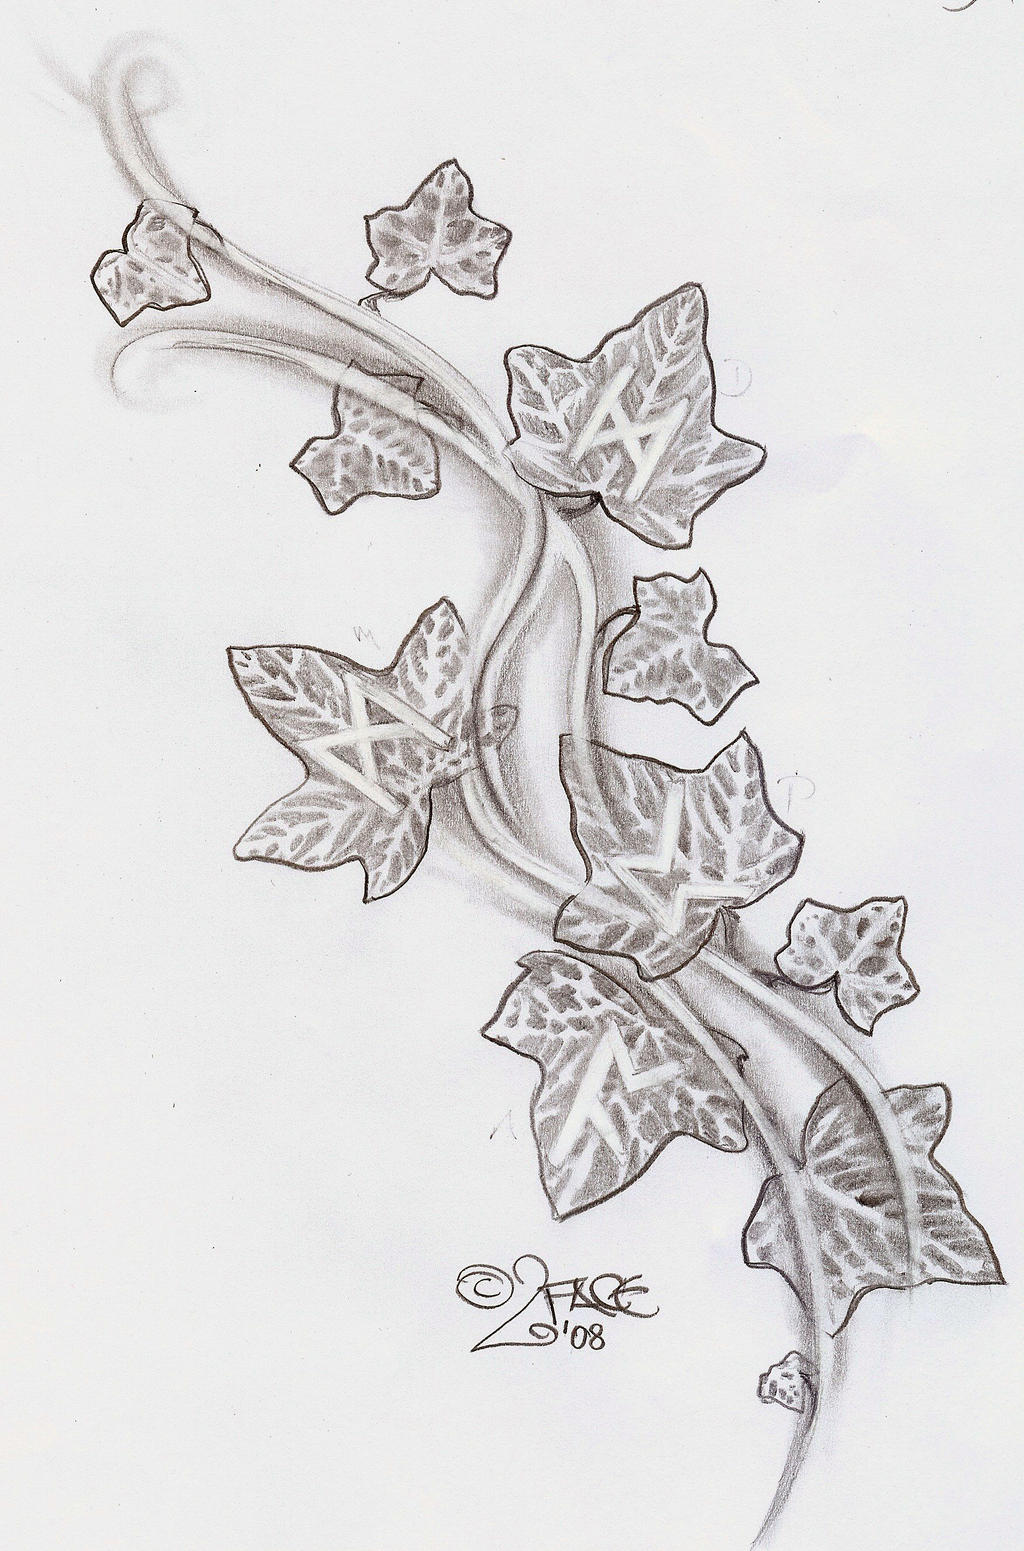 Ivy climbs runes Tattoo Design